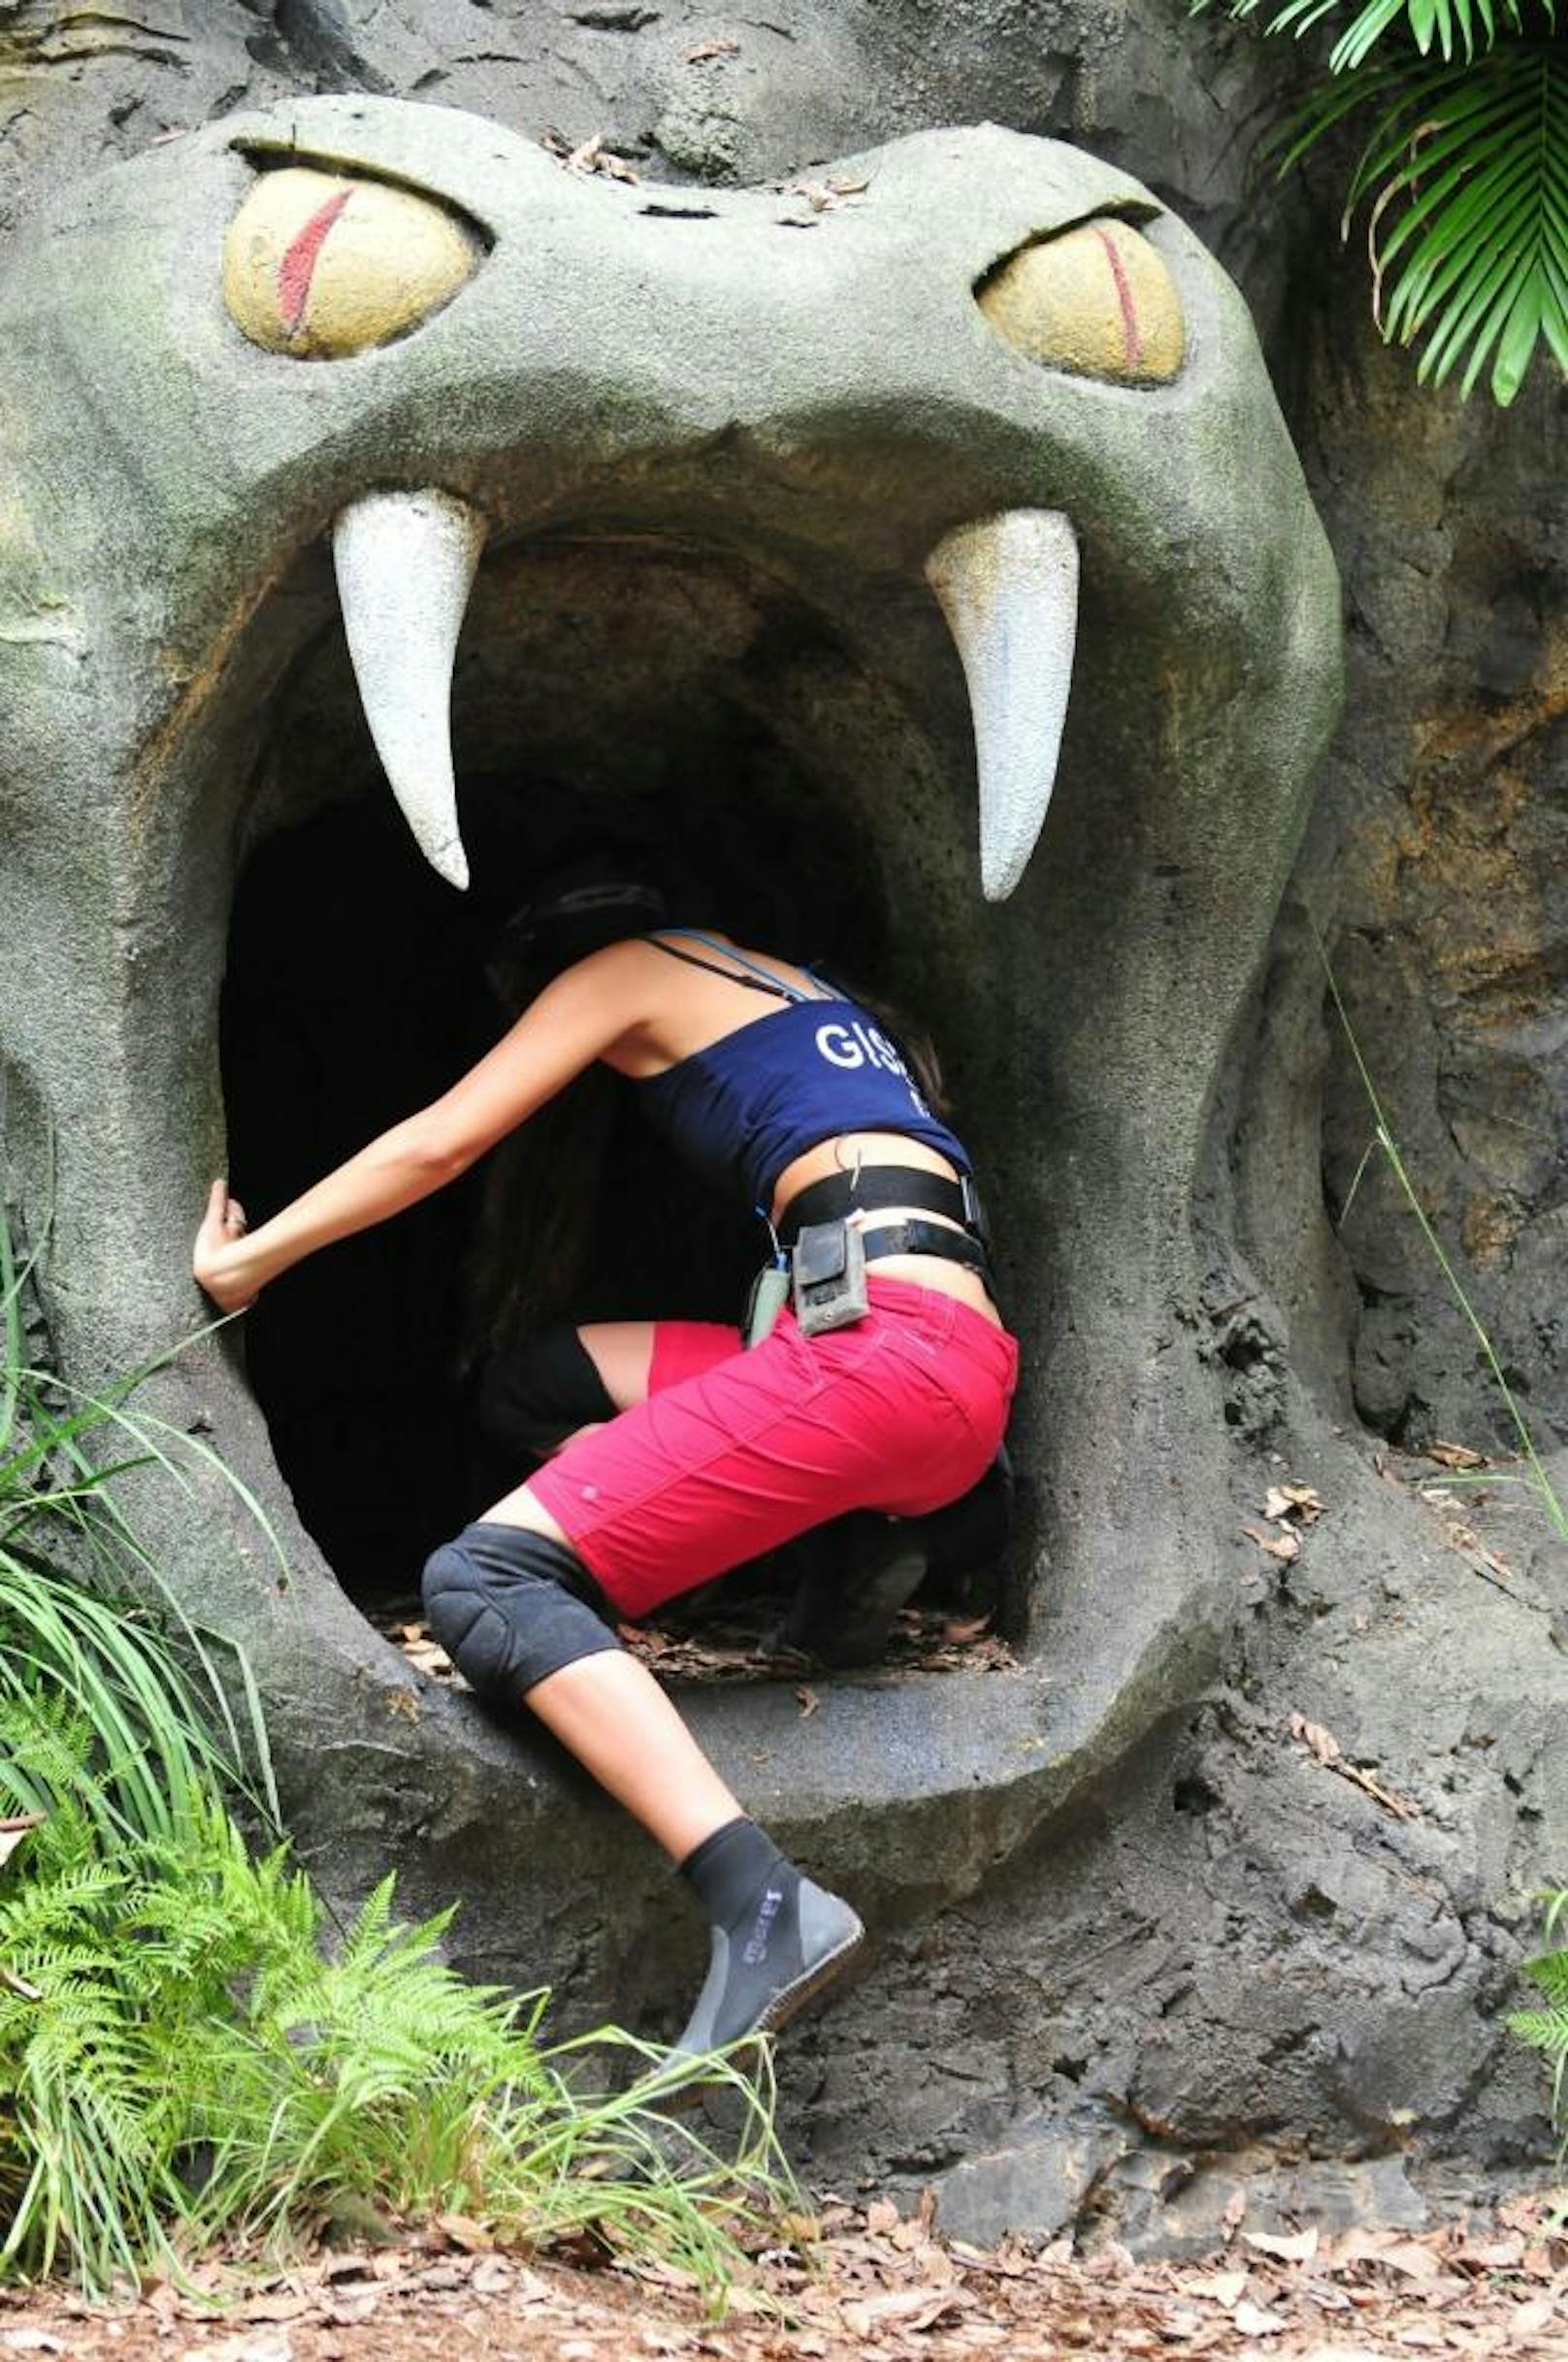 Gisele Oppermann setzt vorsichtig zuerst den rechten Fuß in die Höhle, dann den linken und steckt ängstlich ihren Kopf hinein.